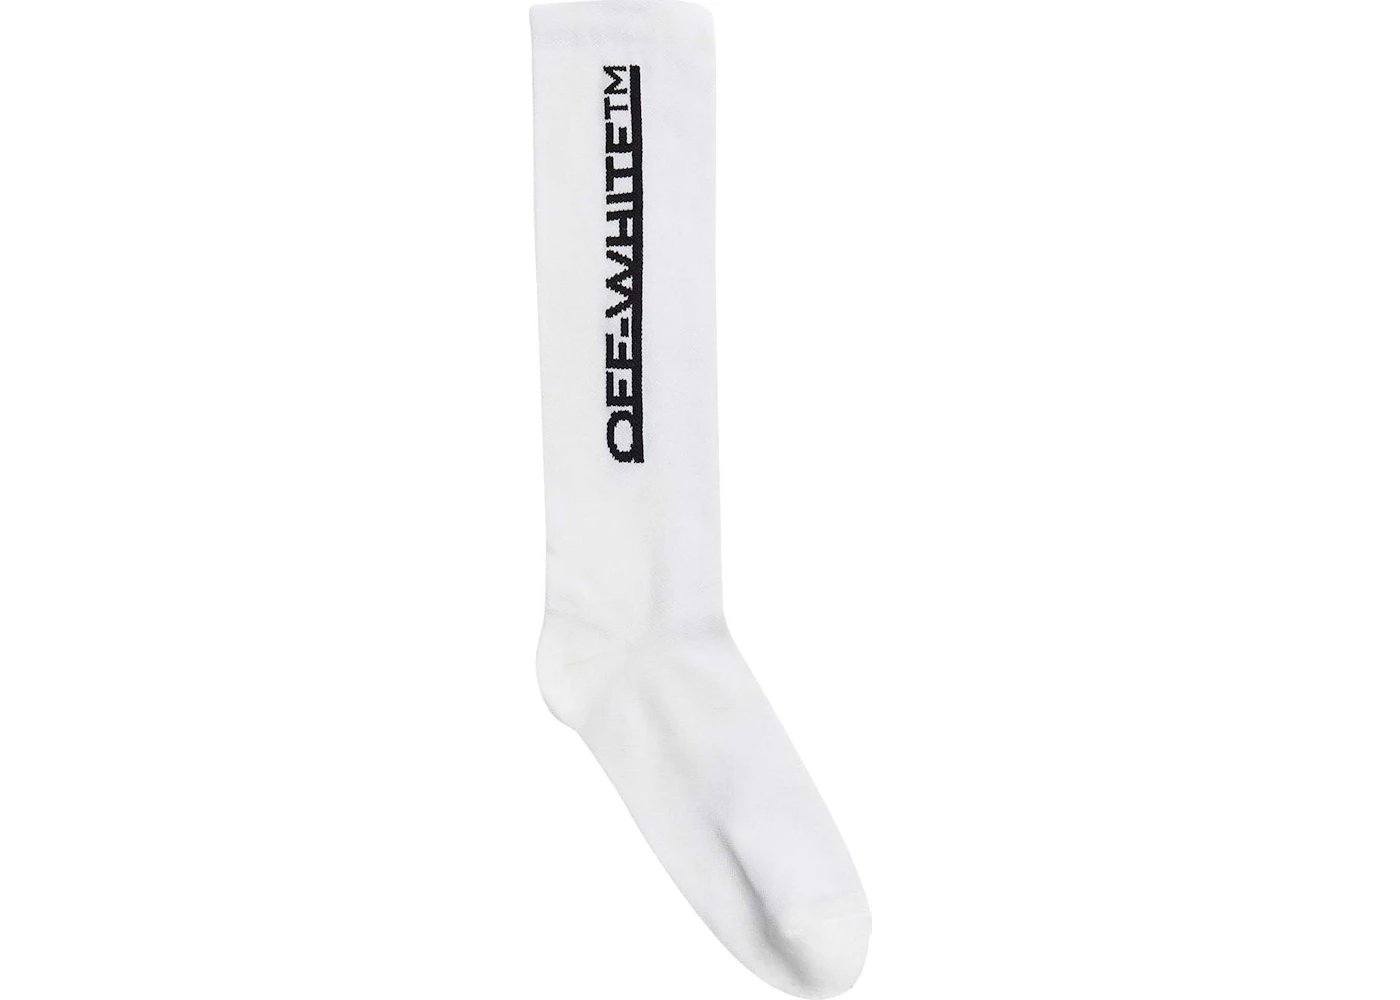 OFF-WHITE Underlined Logo Long Socks White/Black in Cotton - US